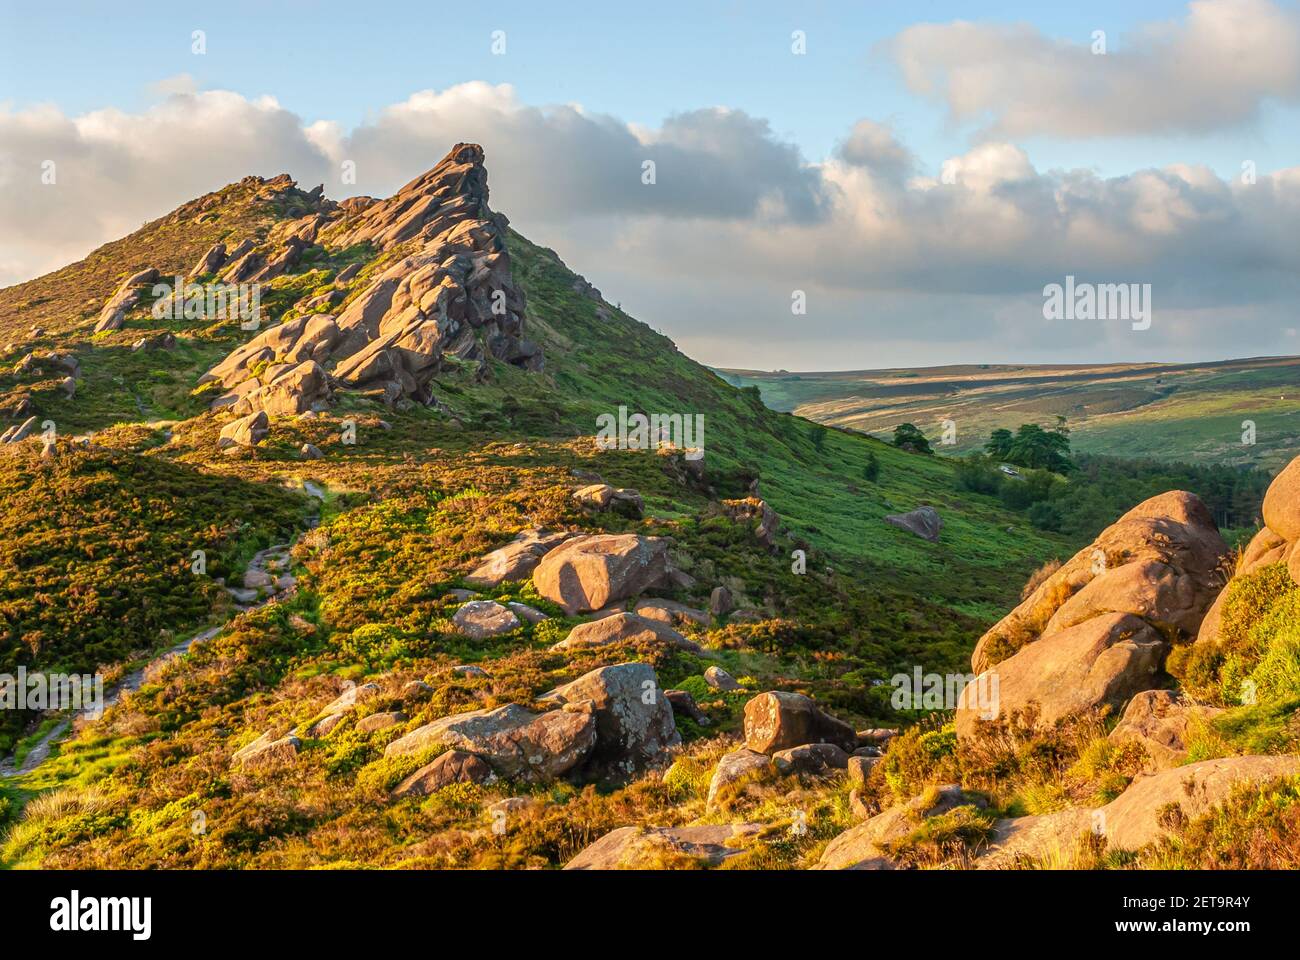 Ramshaw Rocks près de la formation roaches Rock, Peak District, Staffordshire, Angleterre au coucher du soleil. Banque D'Images